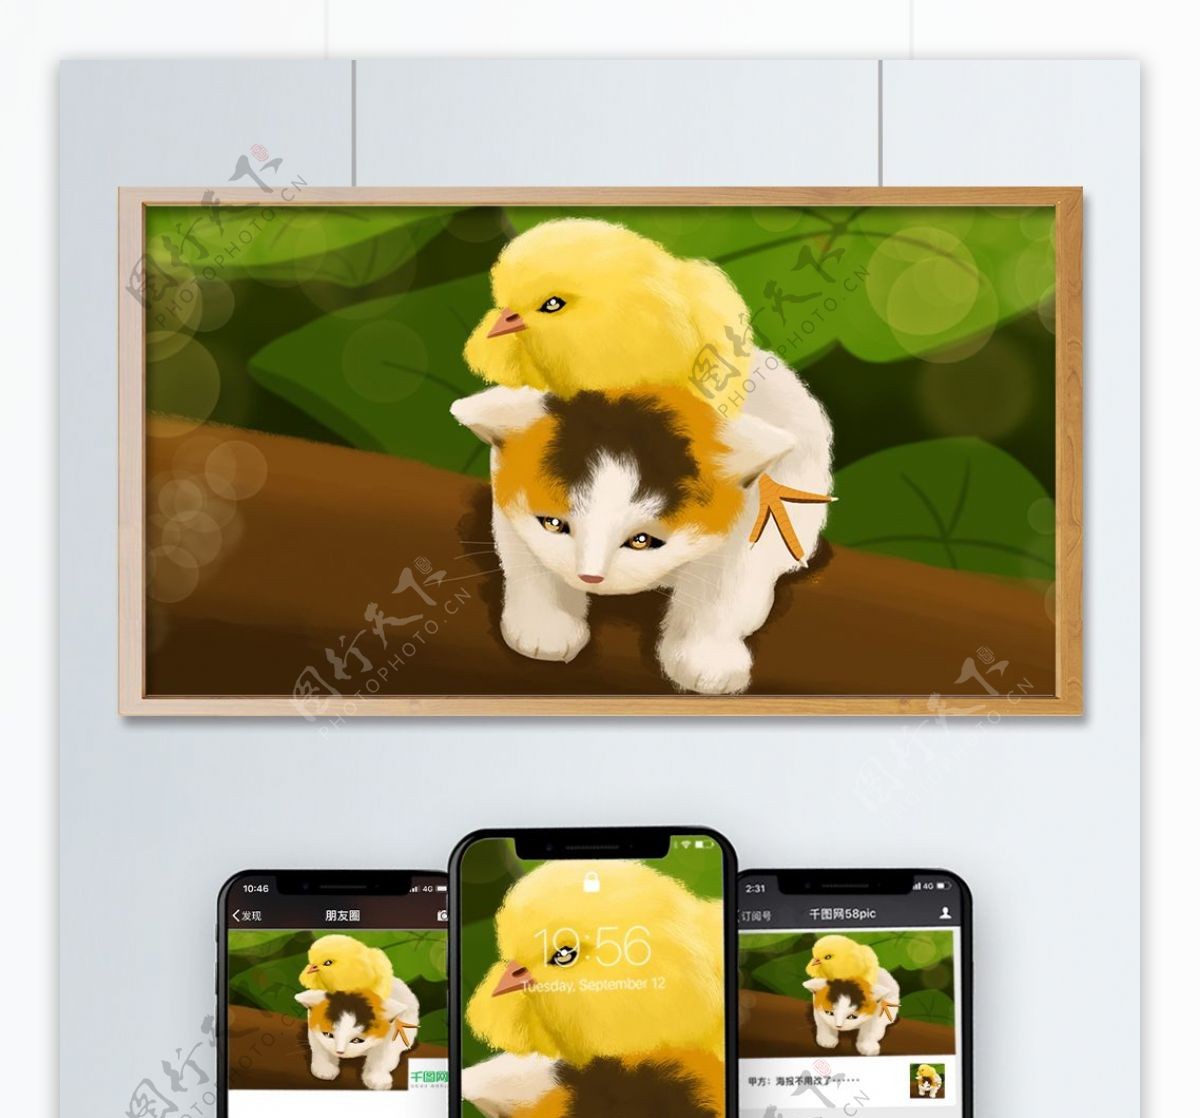 萌萌哒治愈动物系列可爱小猫的英雄救美